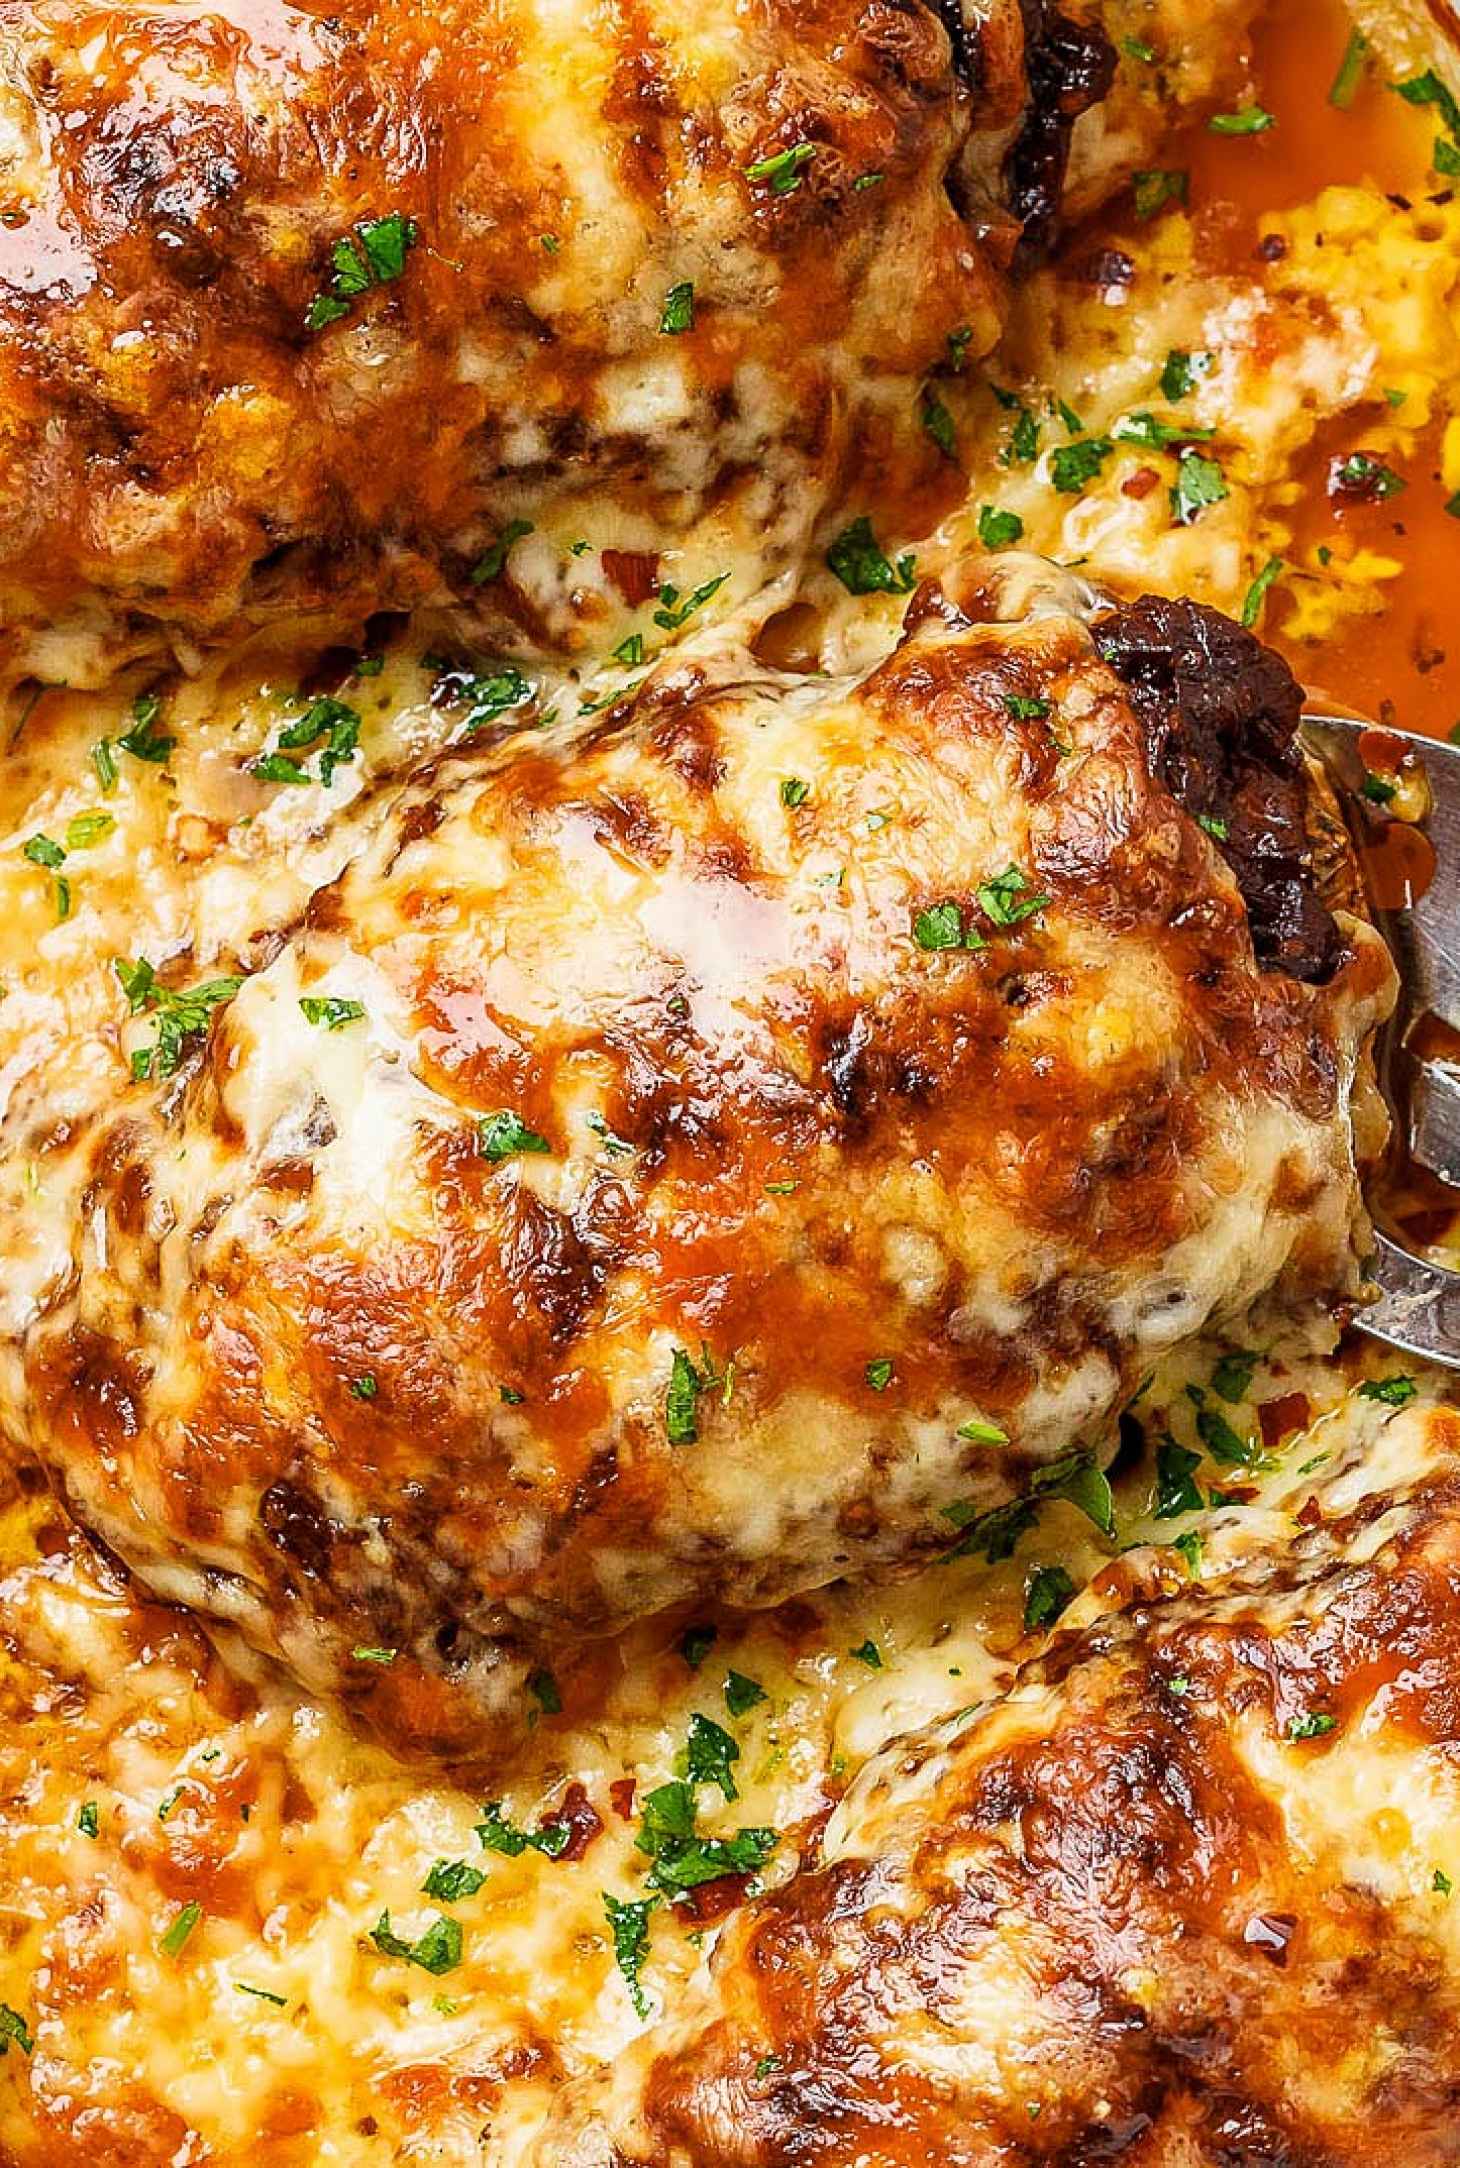 French Onion Chicken Casserole - #recipe by #eatwell101 - https://www.eatwell101.com/french-onion-chicken-casserole-recipe